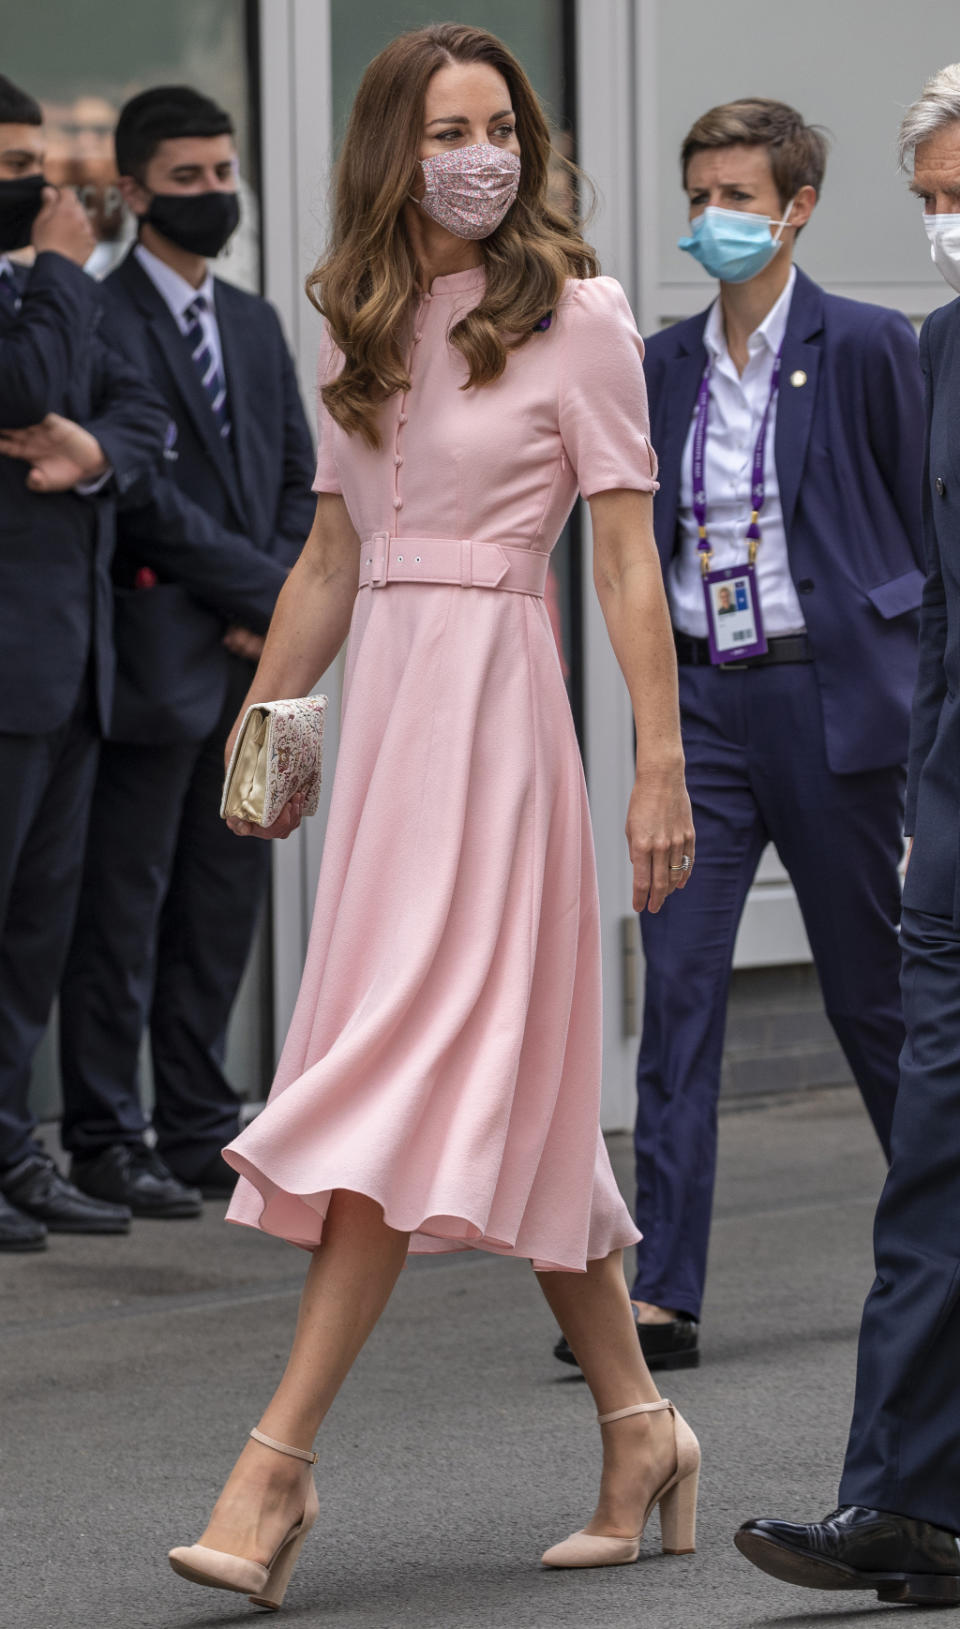 Kate Middleton wears Aldo heels at the Wimbledon Men’s Final on July 11. - Credit: MEGA